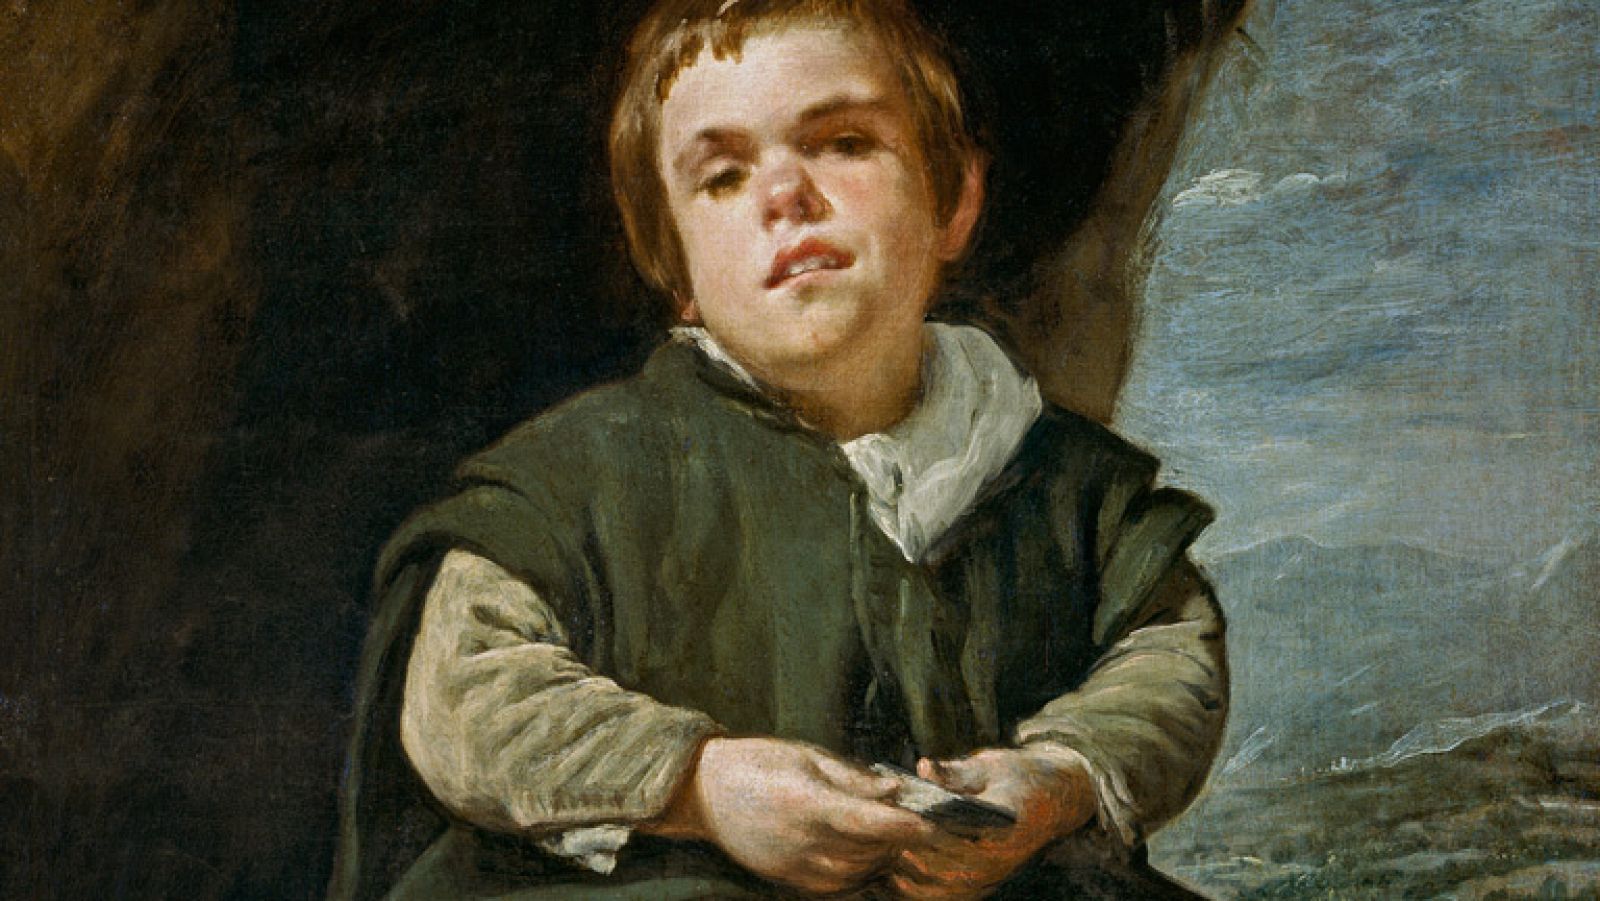 Mirar un cuadro - El niño de Vallecas (Velázquez)